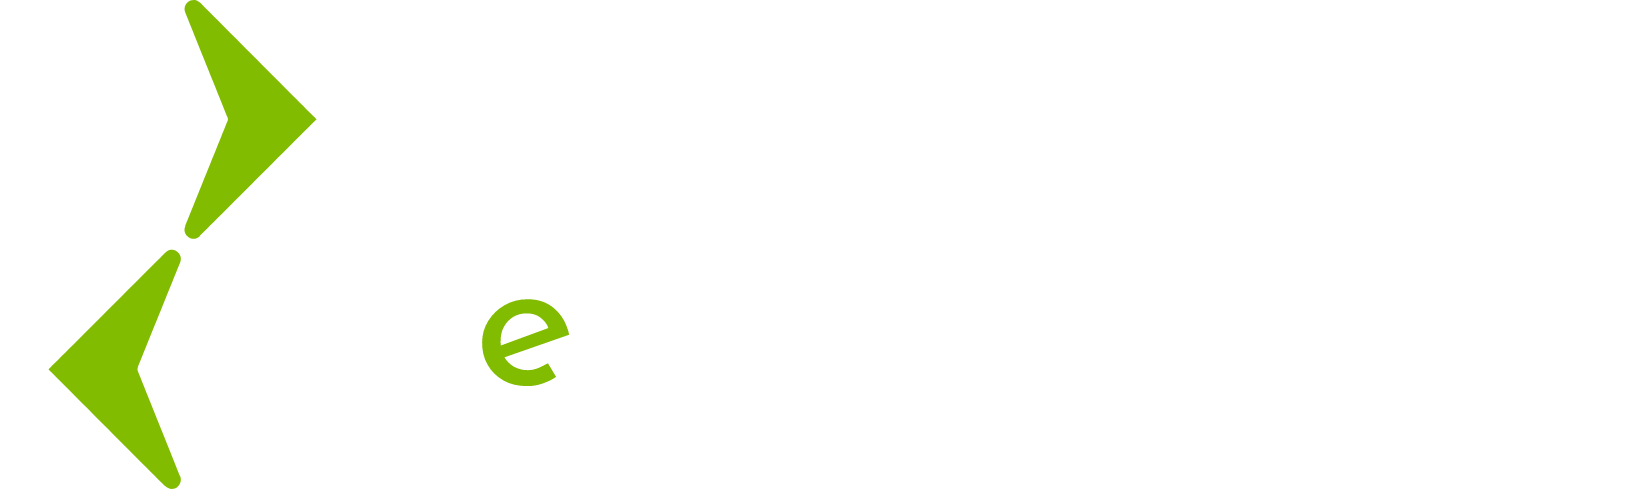 Lightning eMotors Logo groß für dunkle Hintergründe (transparentes PNG)